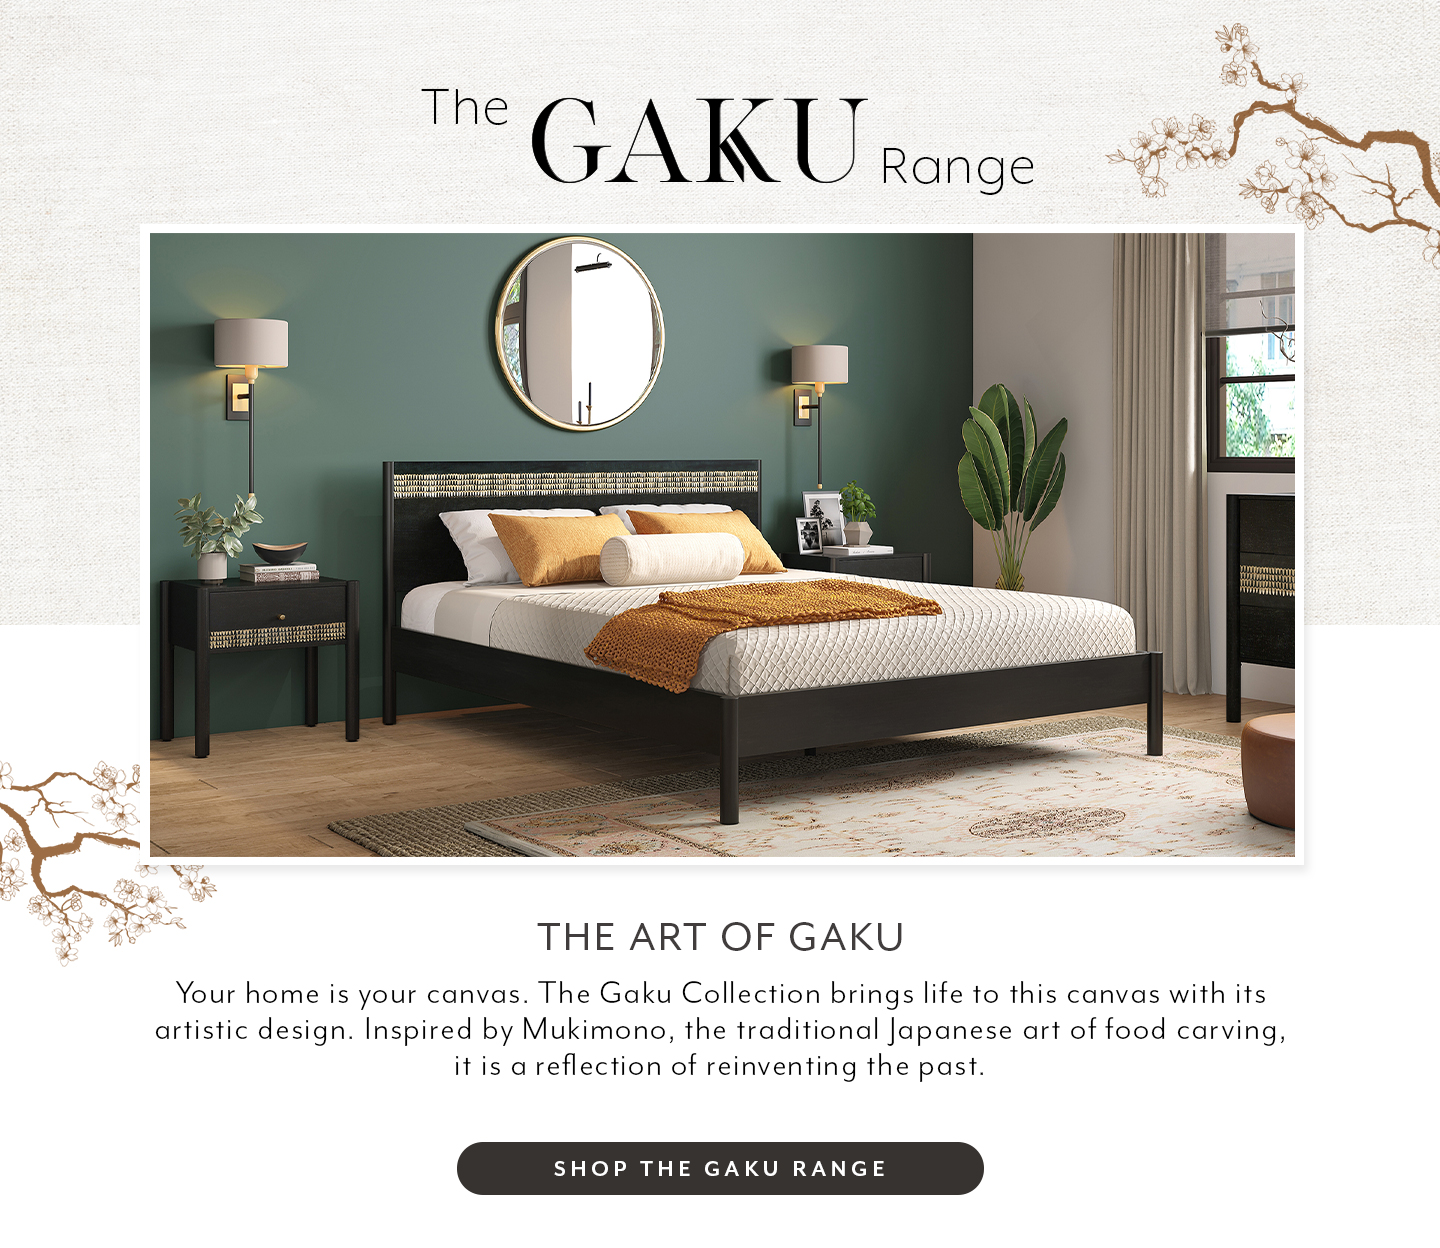 Gaku Range Furniture Collection by Urban Ladder
